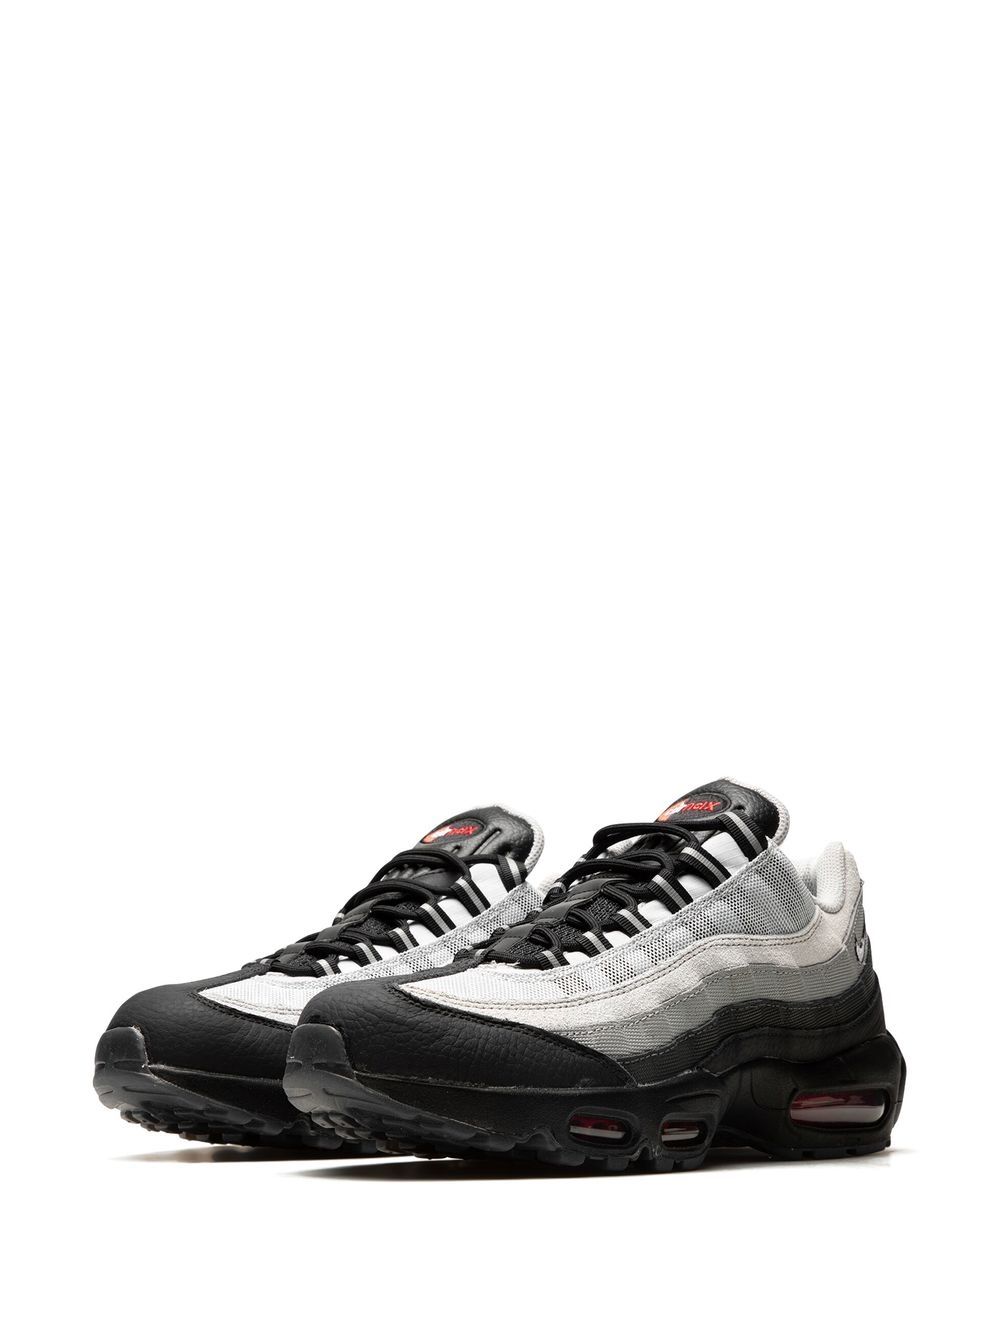 Nike Air Max 95 Sneakers